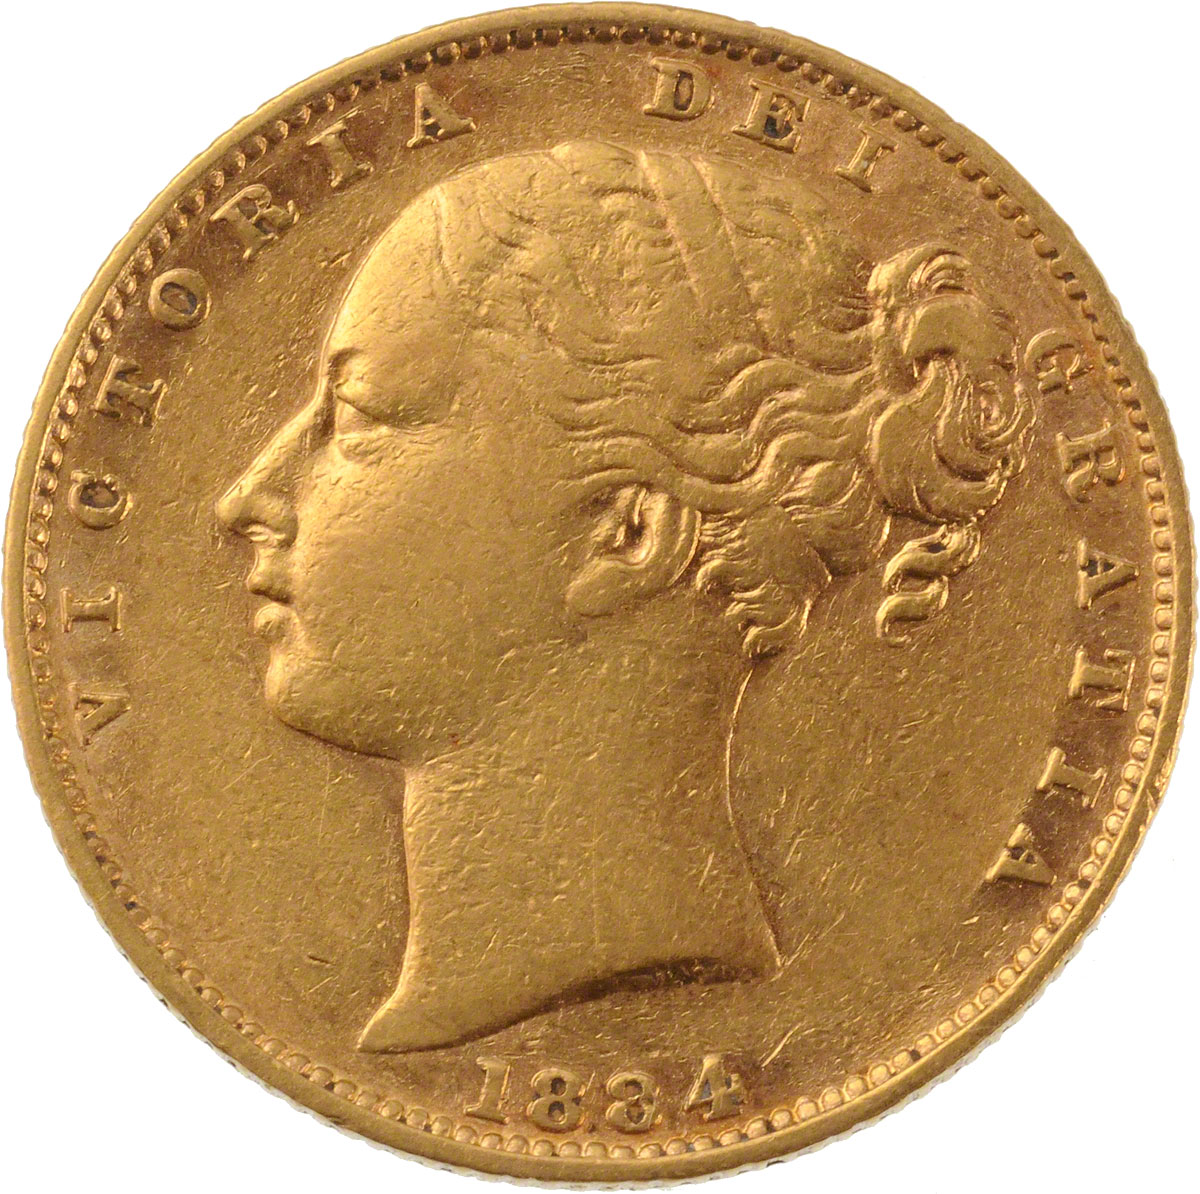 1884 Βικτώρια – Θυρεός (Νομισματοκοπείο Μελβούρνης)